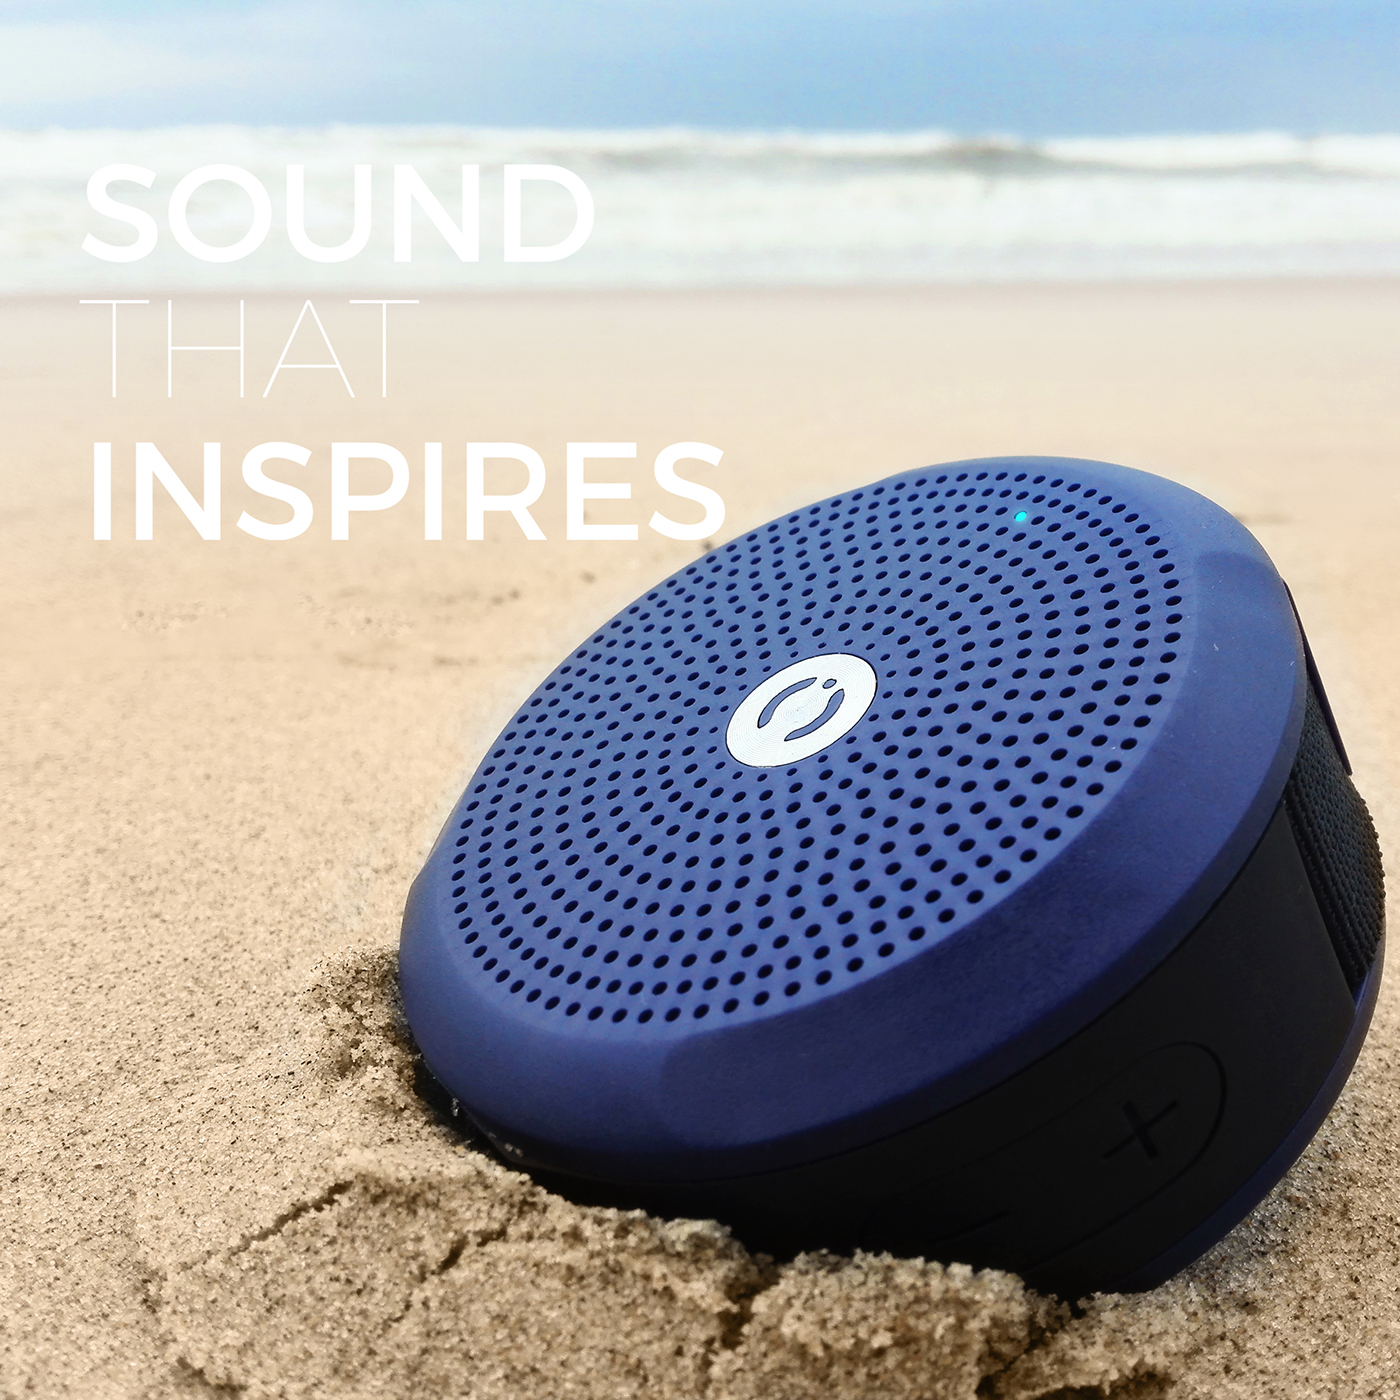 design speaker product design  industrial design  Amazon music connected